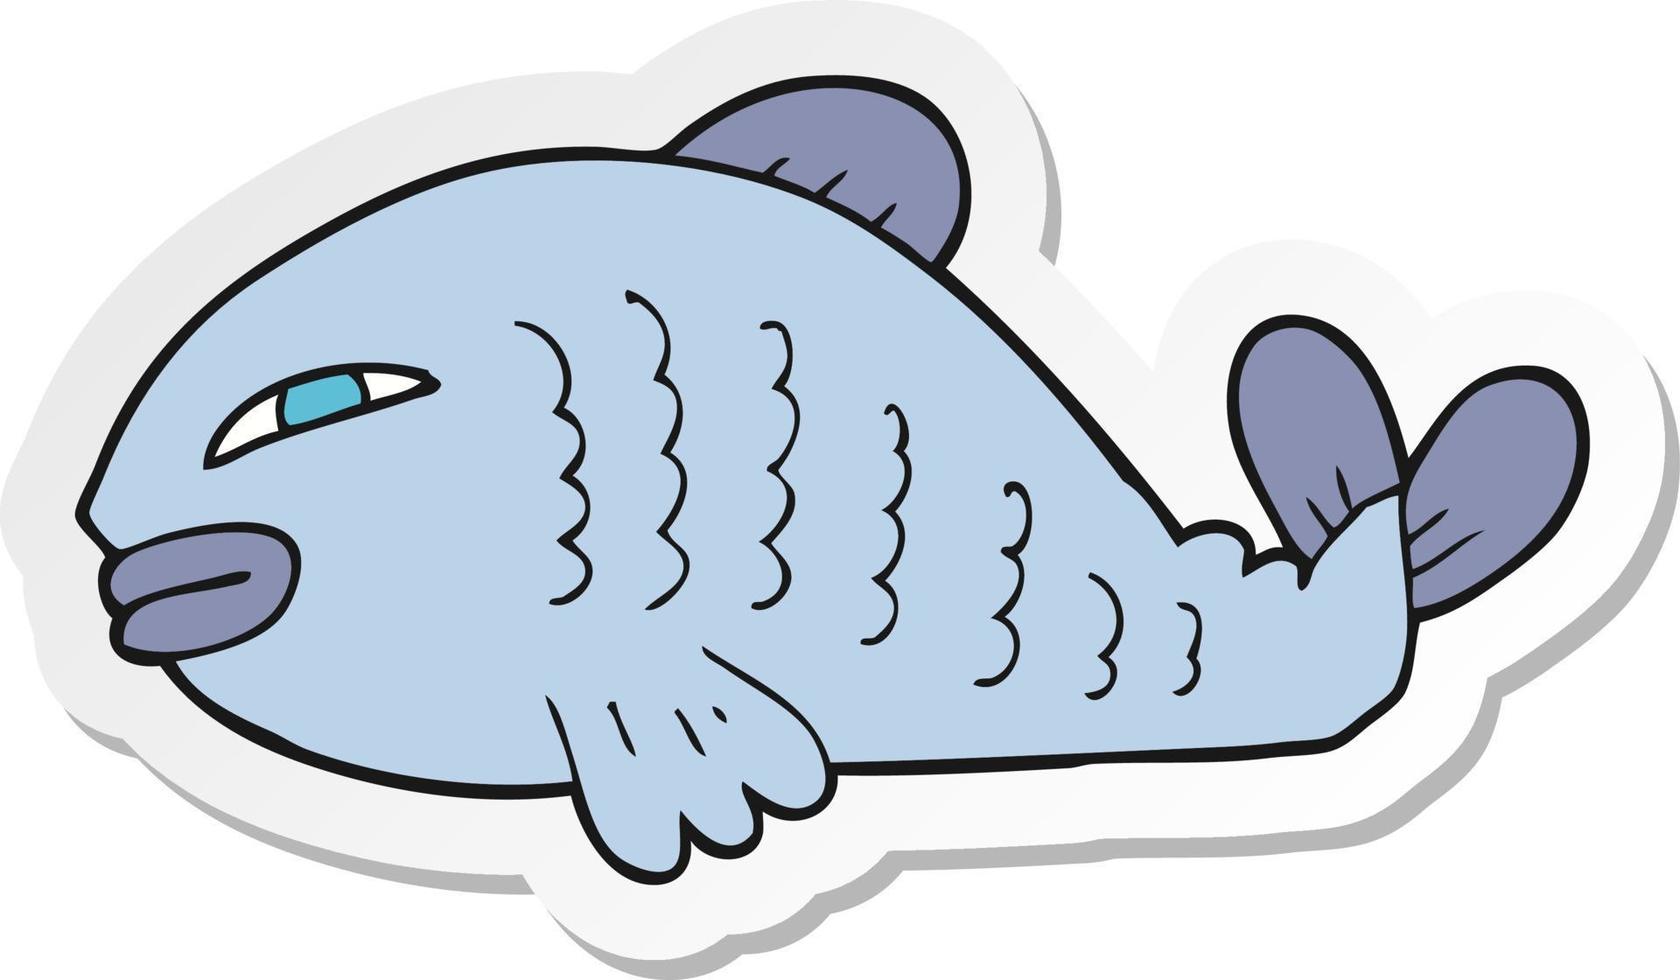 adesivo di un pesce cartone animato vettore